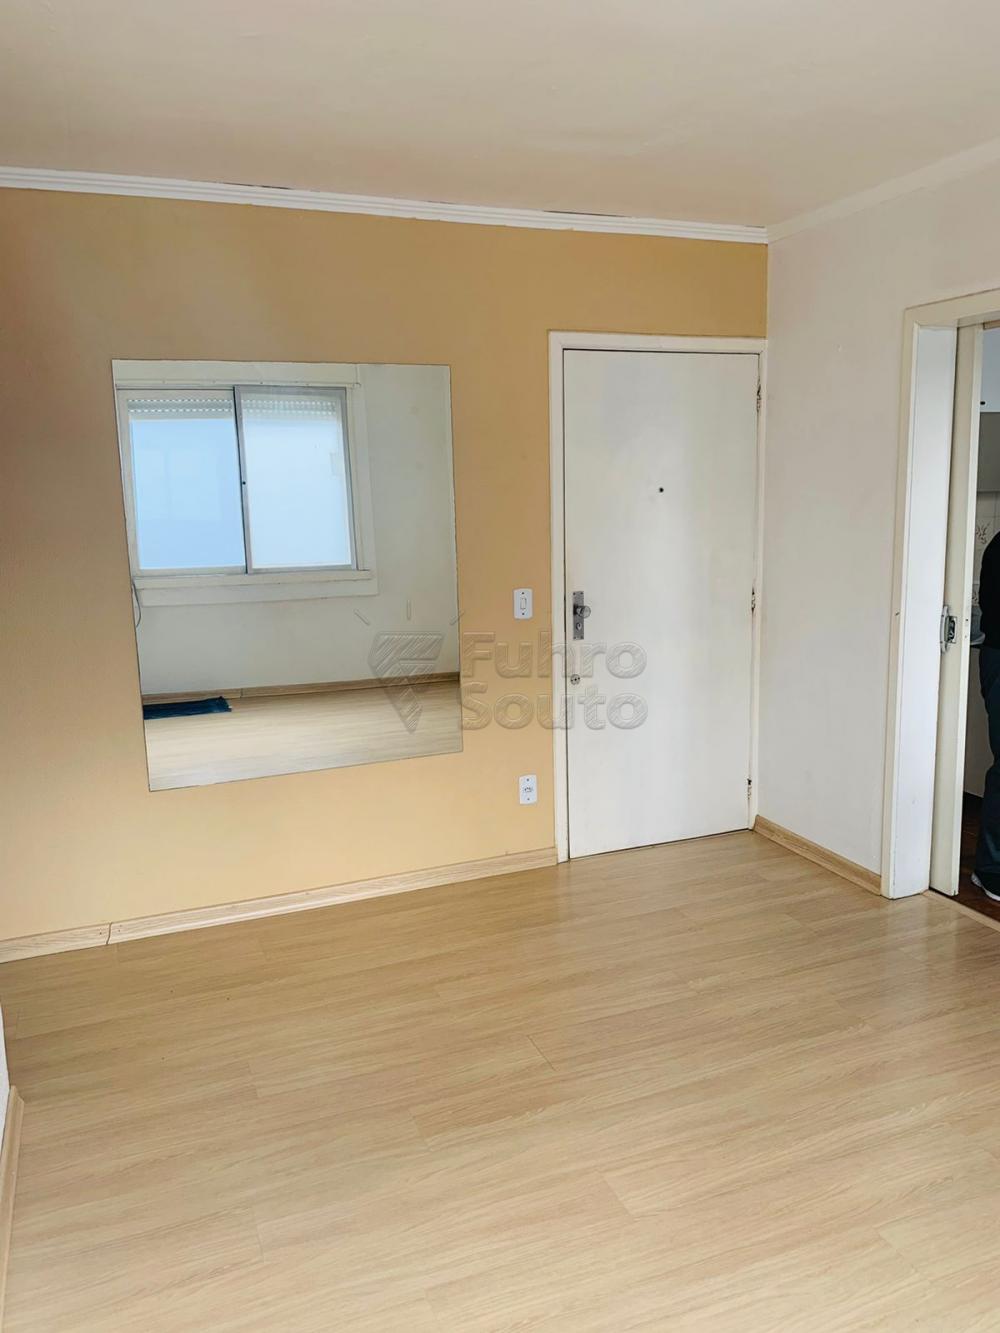 Comprar Apartamento / Padrão em Pelotas R$ 200.000,00 - Foto 5